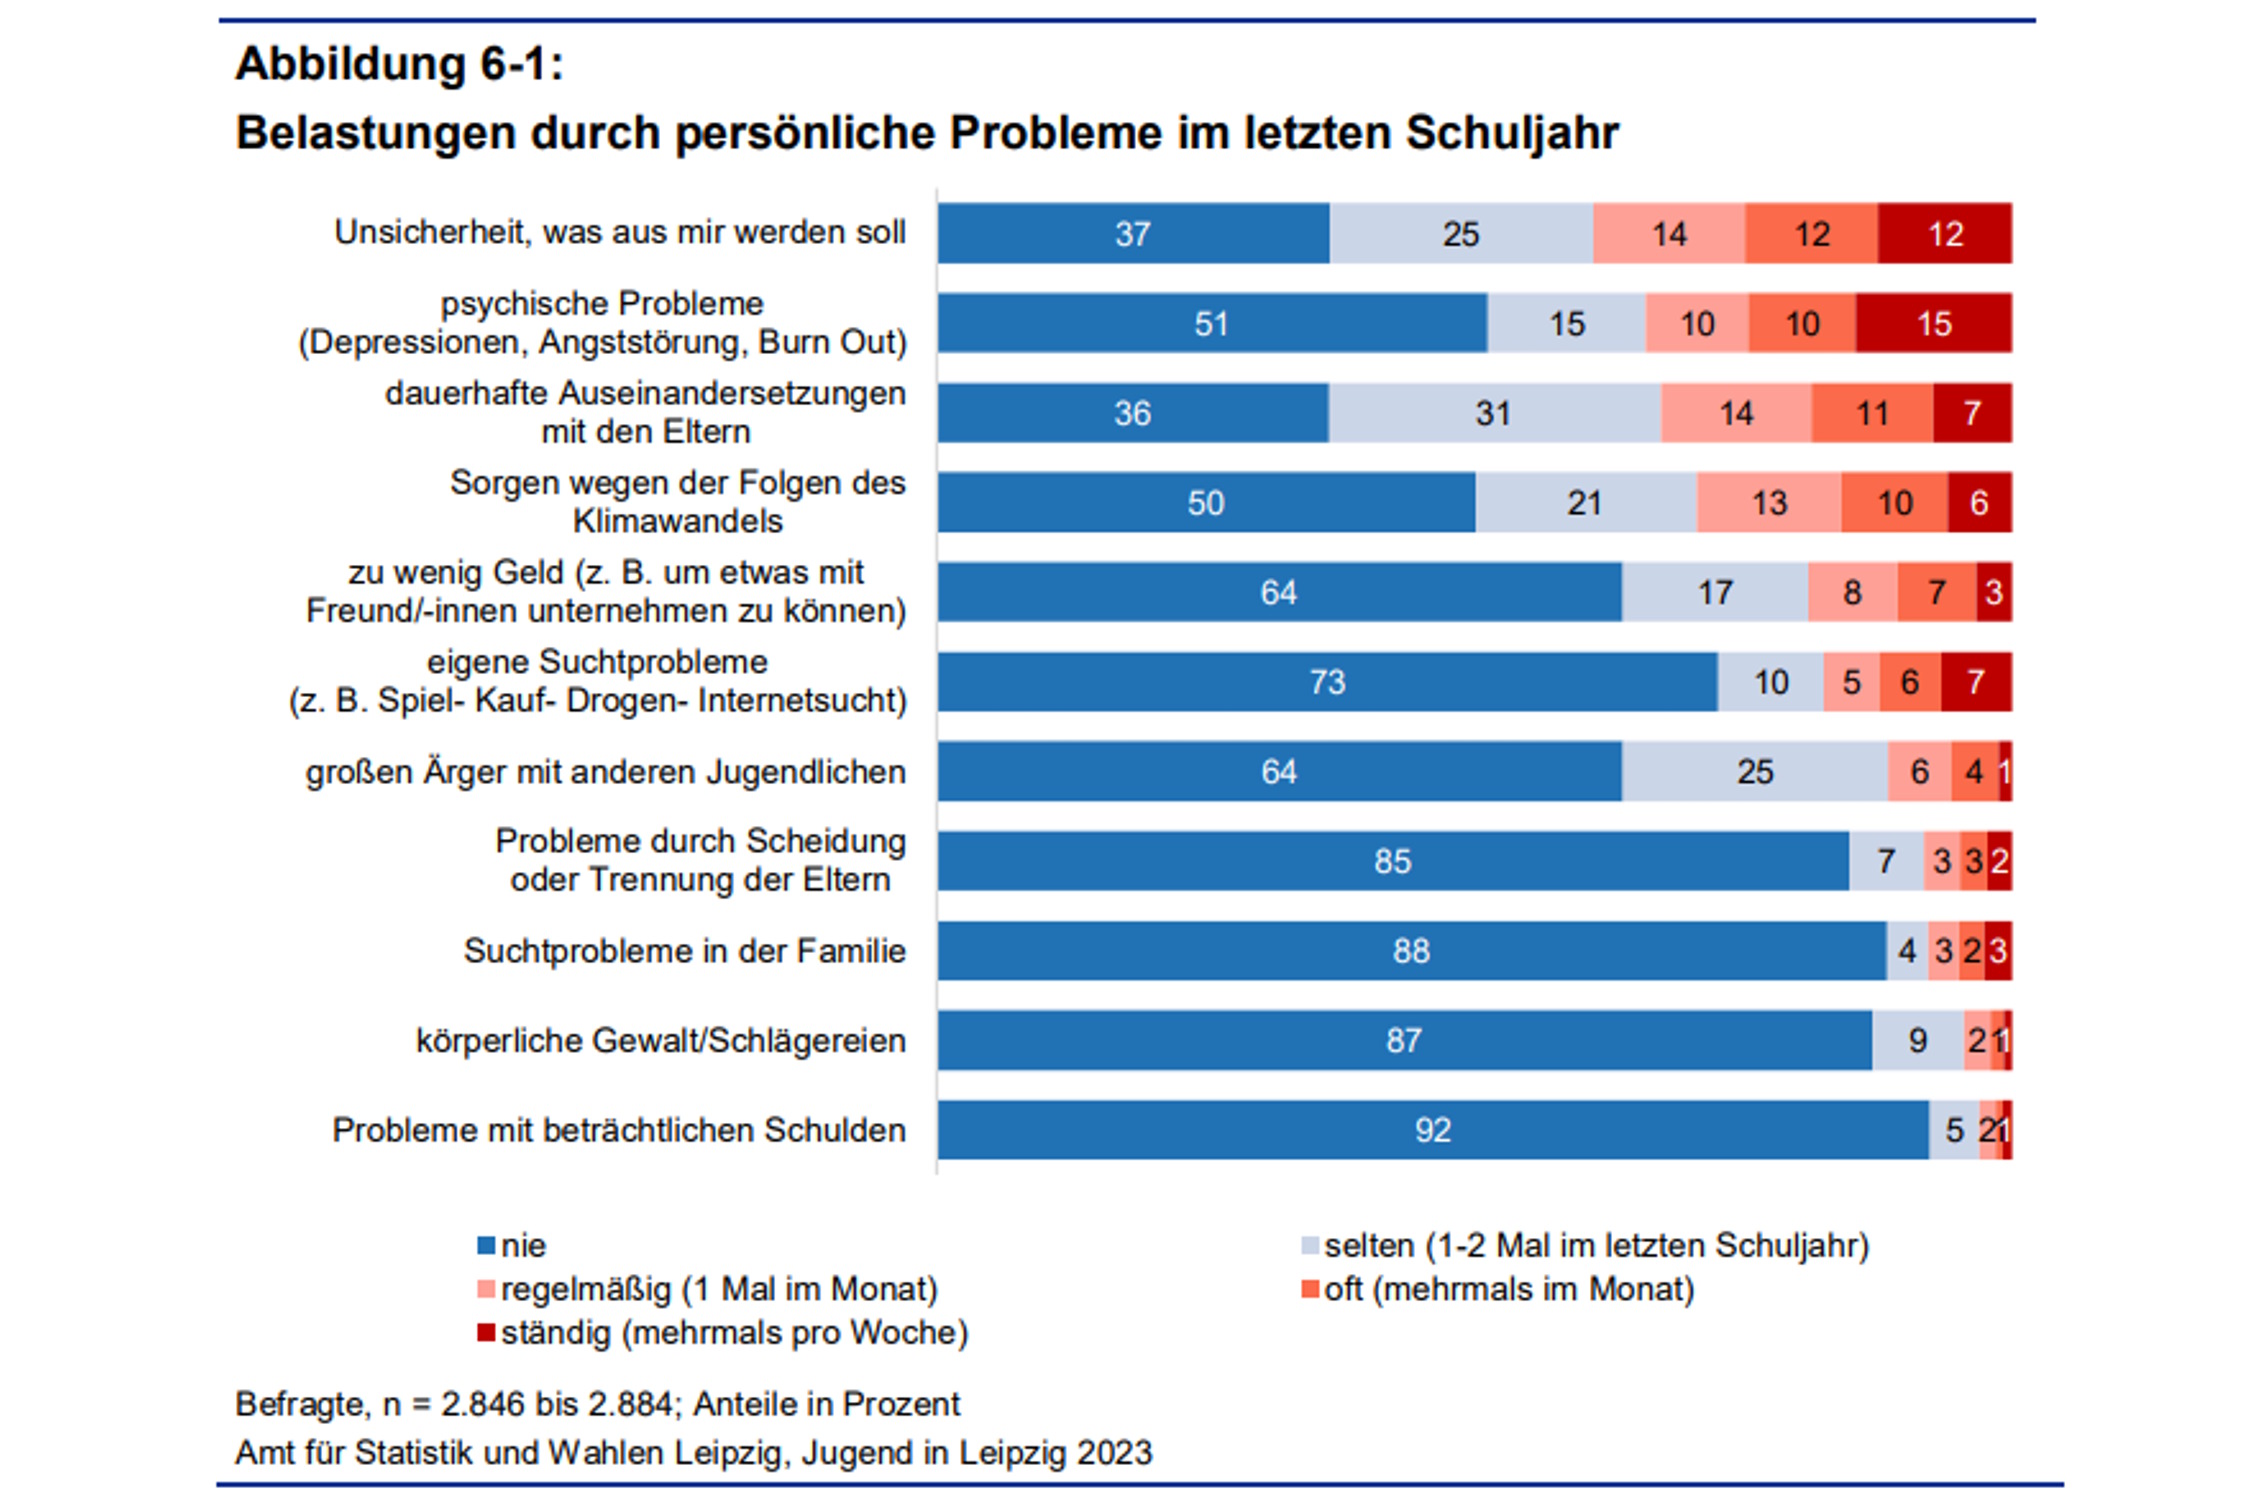 Die persönlichen Probleme der Leipziger Jugendlichen. Grafik: Stadt Leipzig, Studie "Jugend in Leipzig 2023"